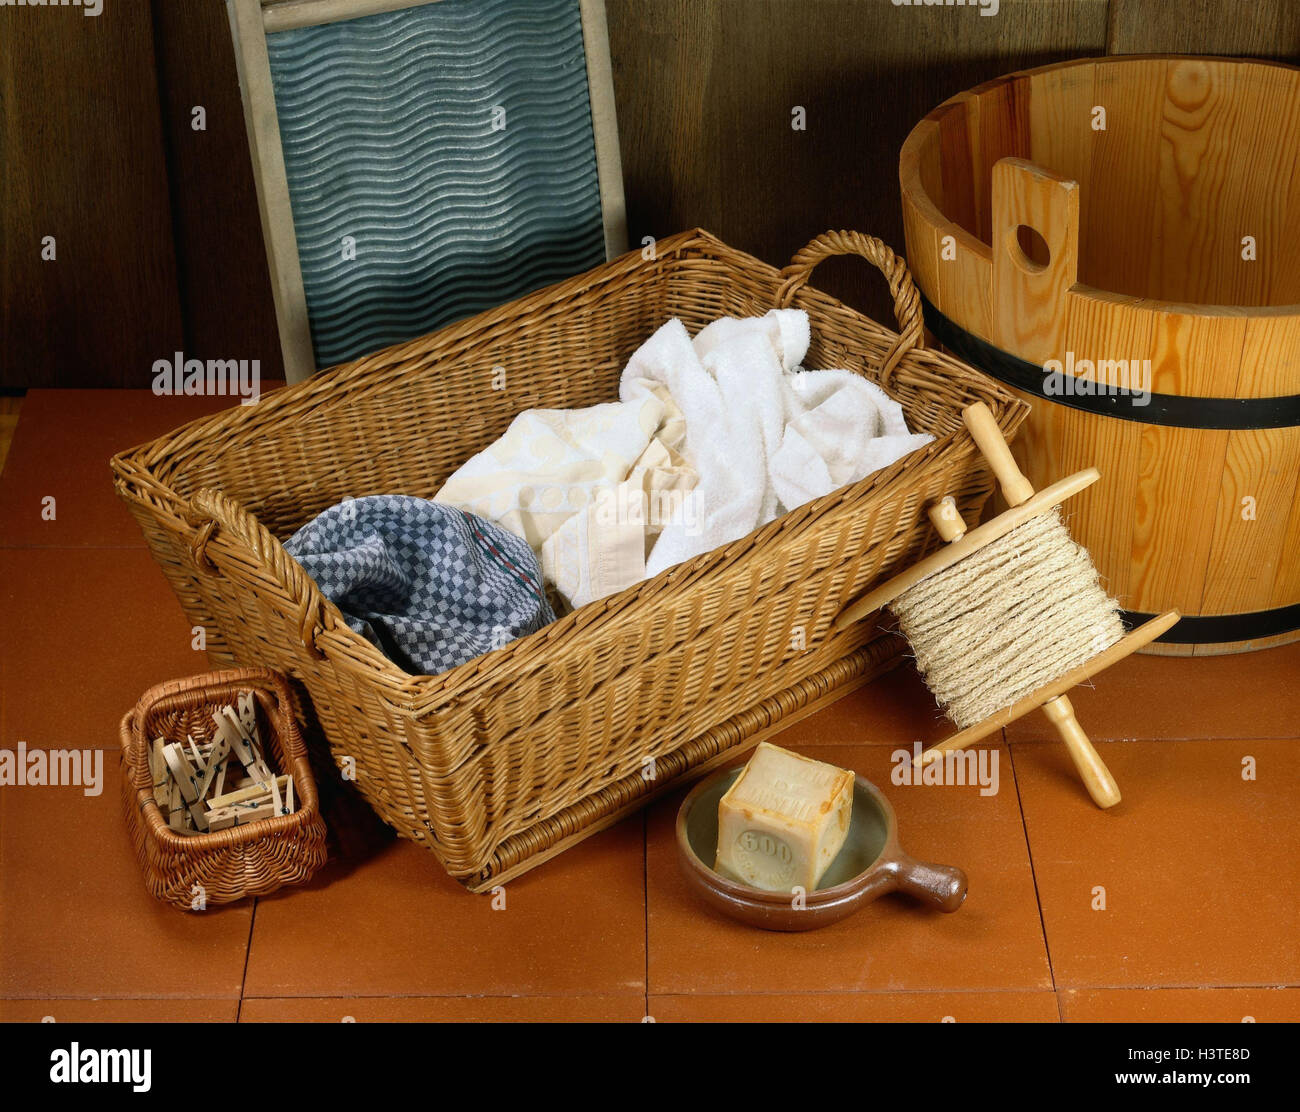 Cesta de lavandería de mimbre hecha a mano con tapa, cesta de lavandería  tejida a mano con forro extraíble, cesta grande para lavandería con amplio